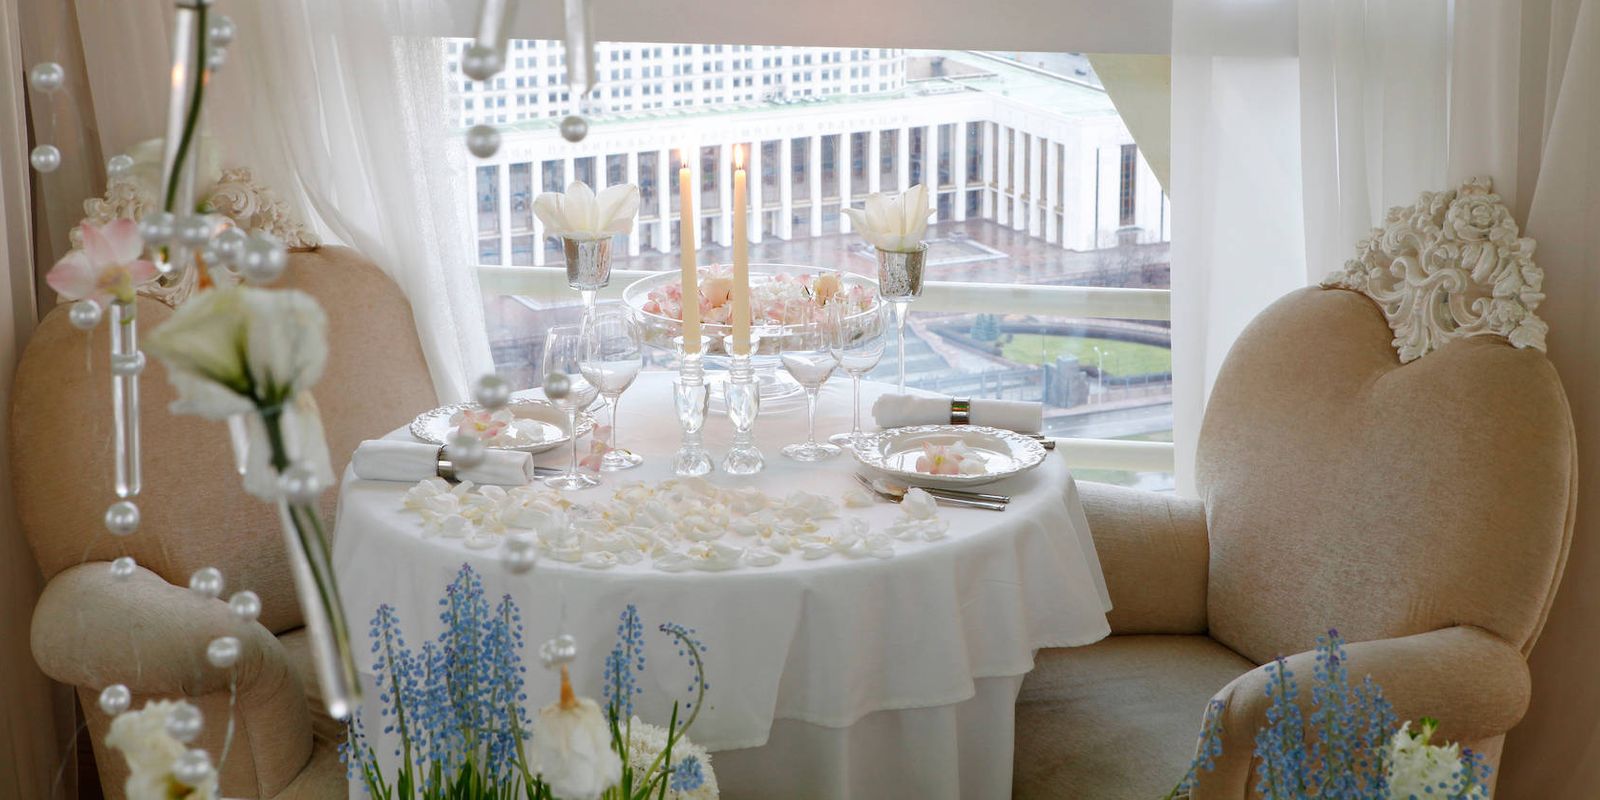 гостиница украина свадебные